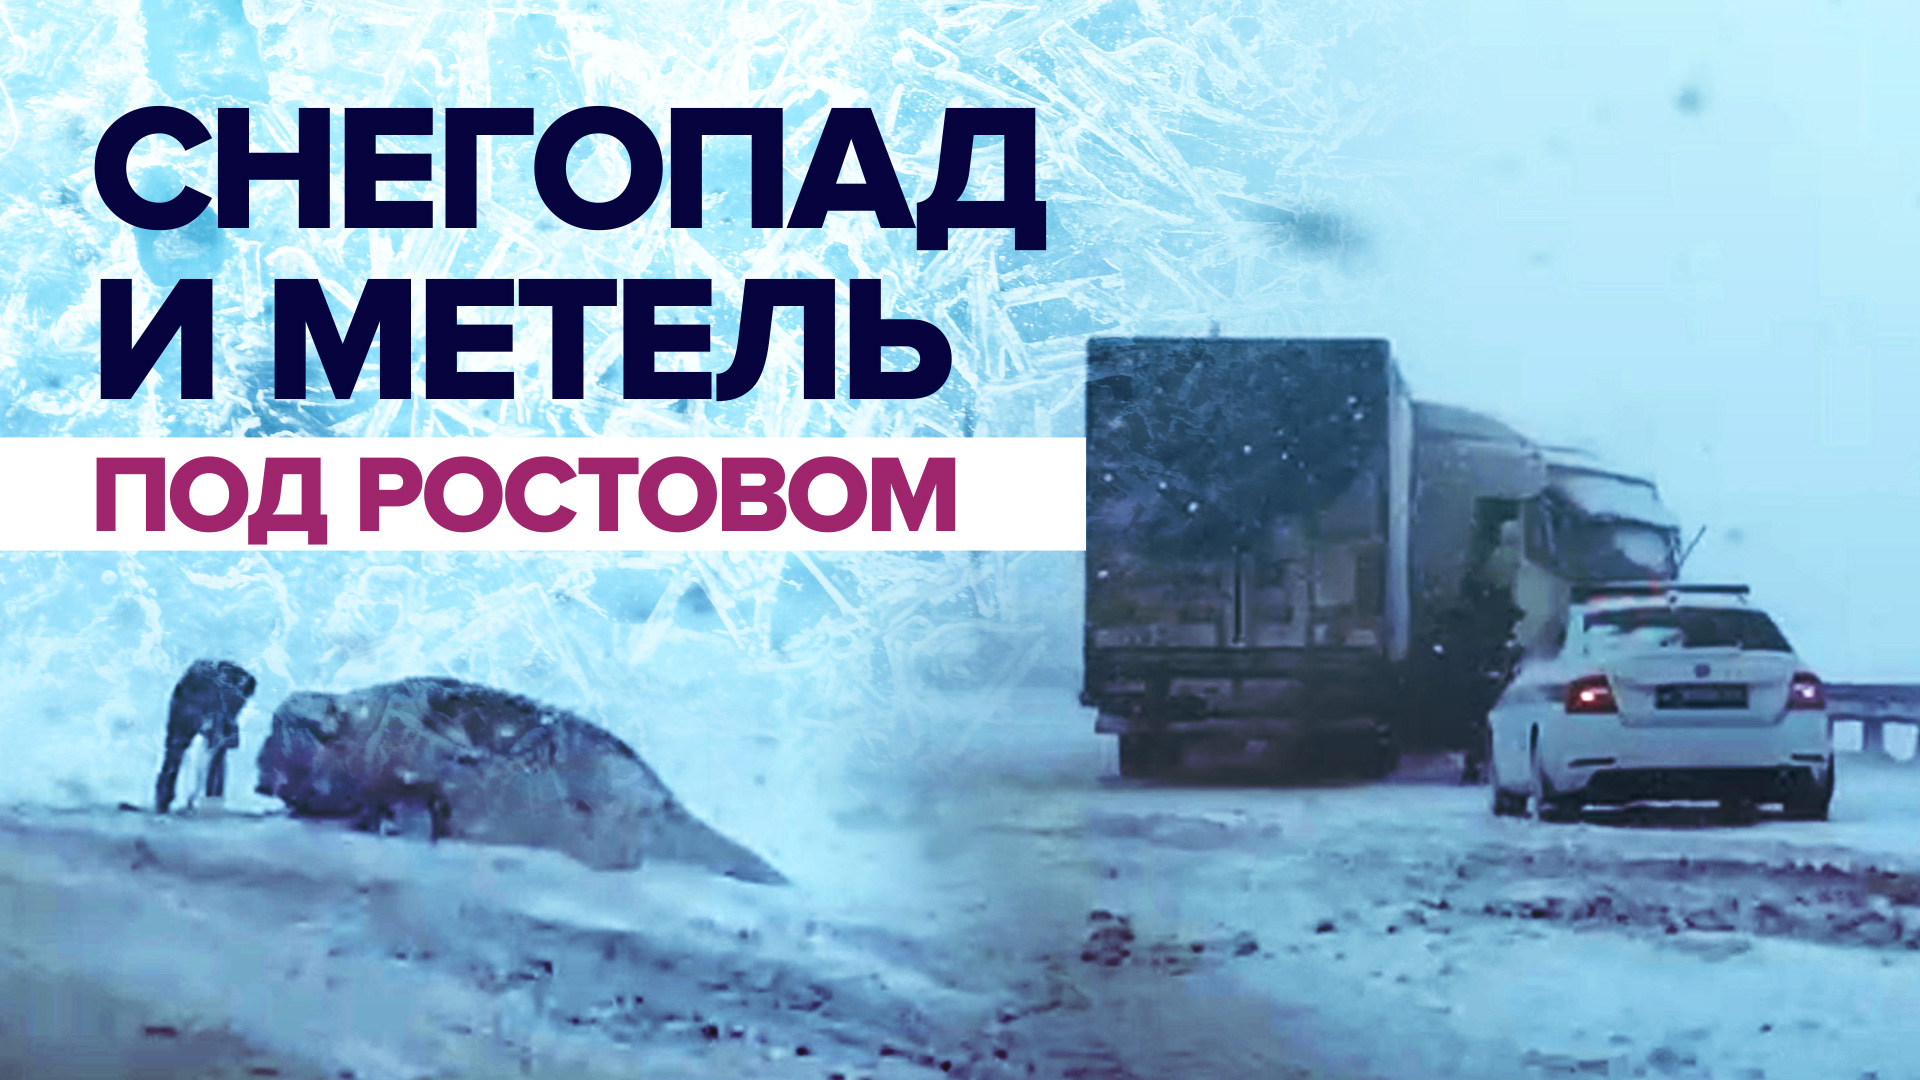 Ростовскую область накрыли снегопад и метель — видео